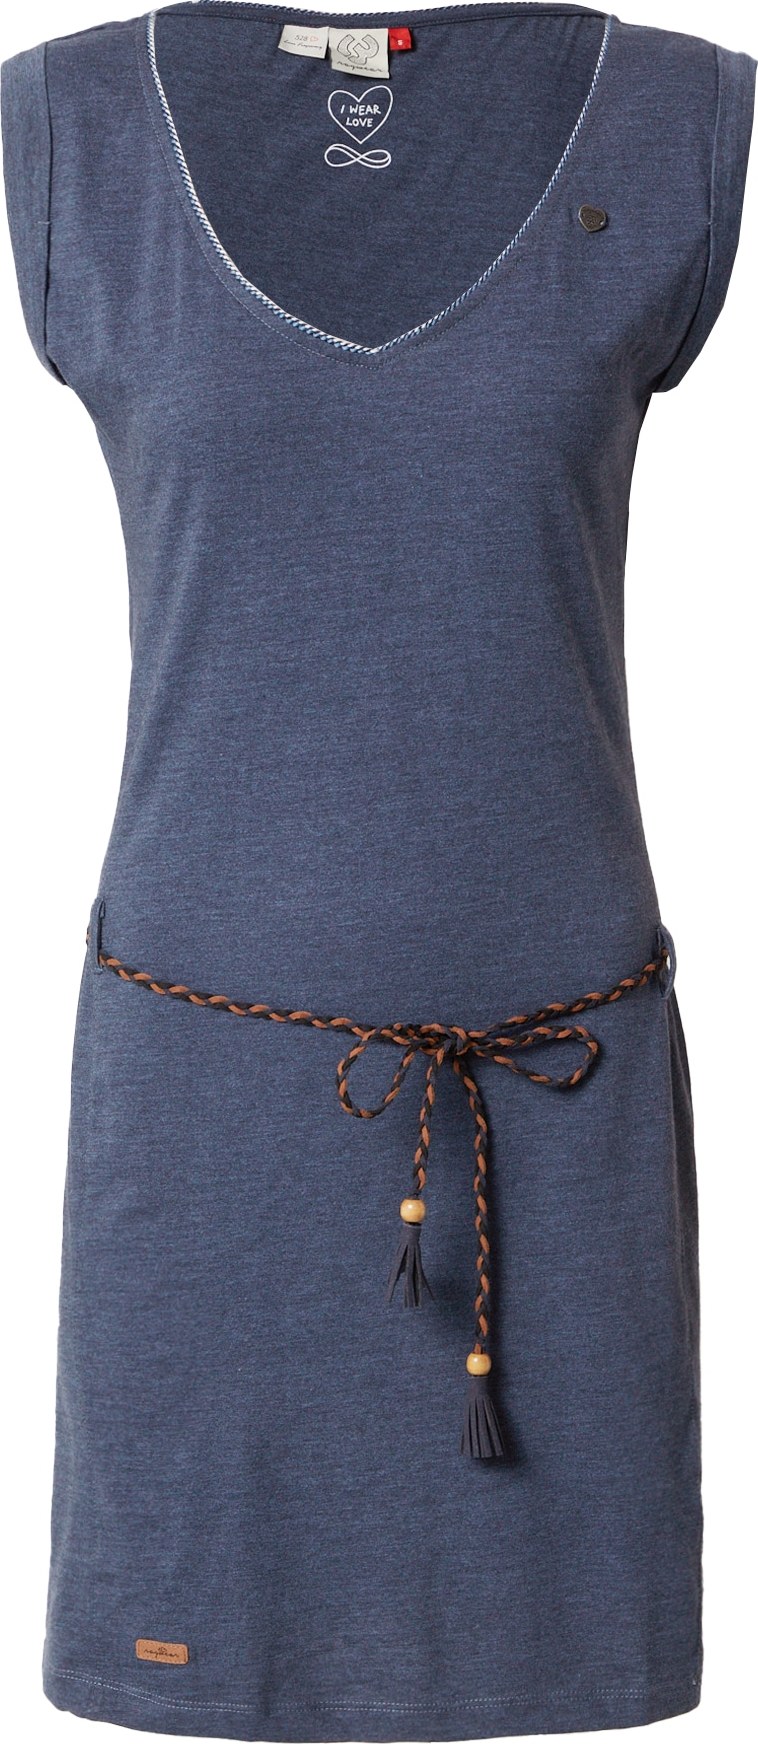 Letní šaty 'Slavka' Ragwear marine modrá / světle hnědá / černá